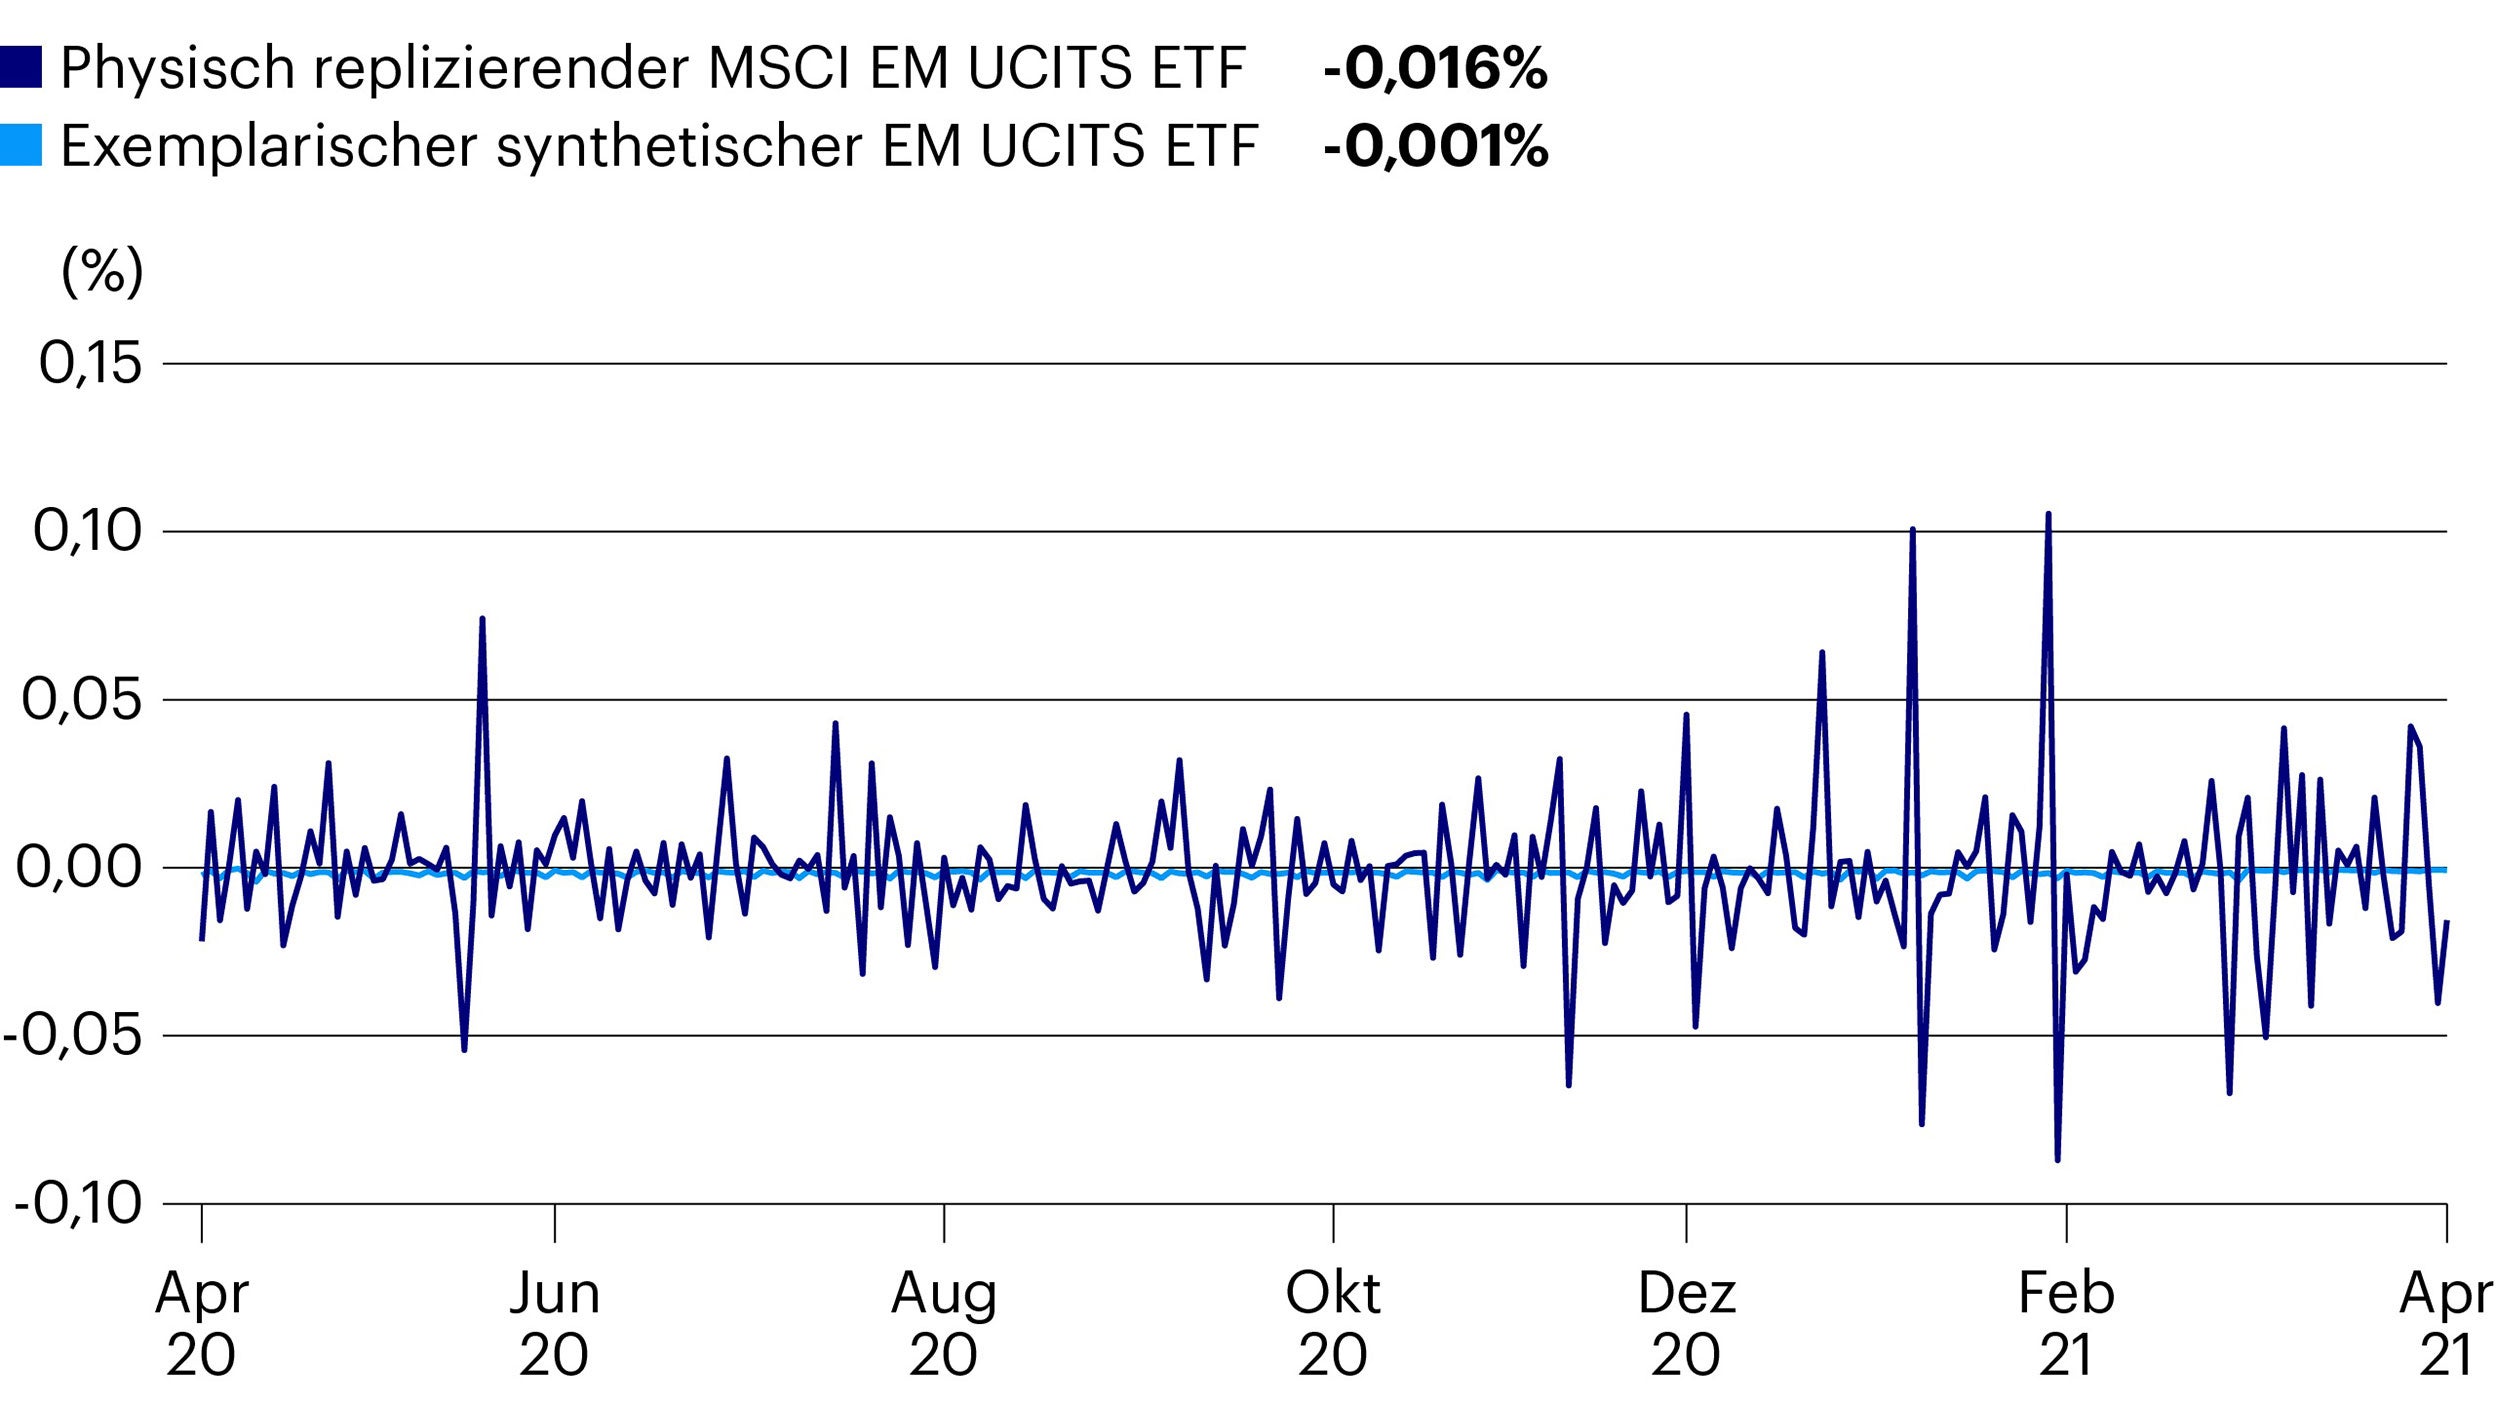 Tracking Error: Der größte physisch replizierende EM UCITS ETF ggü. einem exemplarischen synthetischen EM UCITS ETF